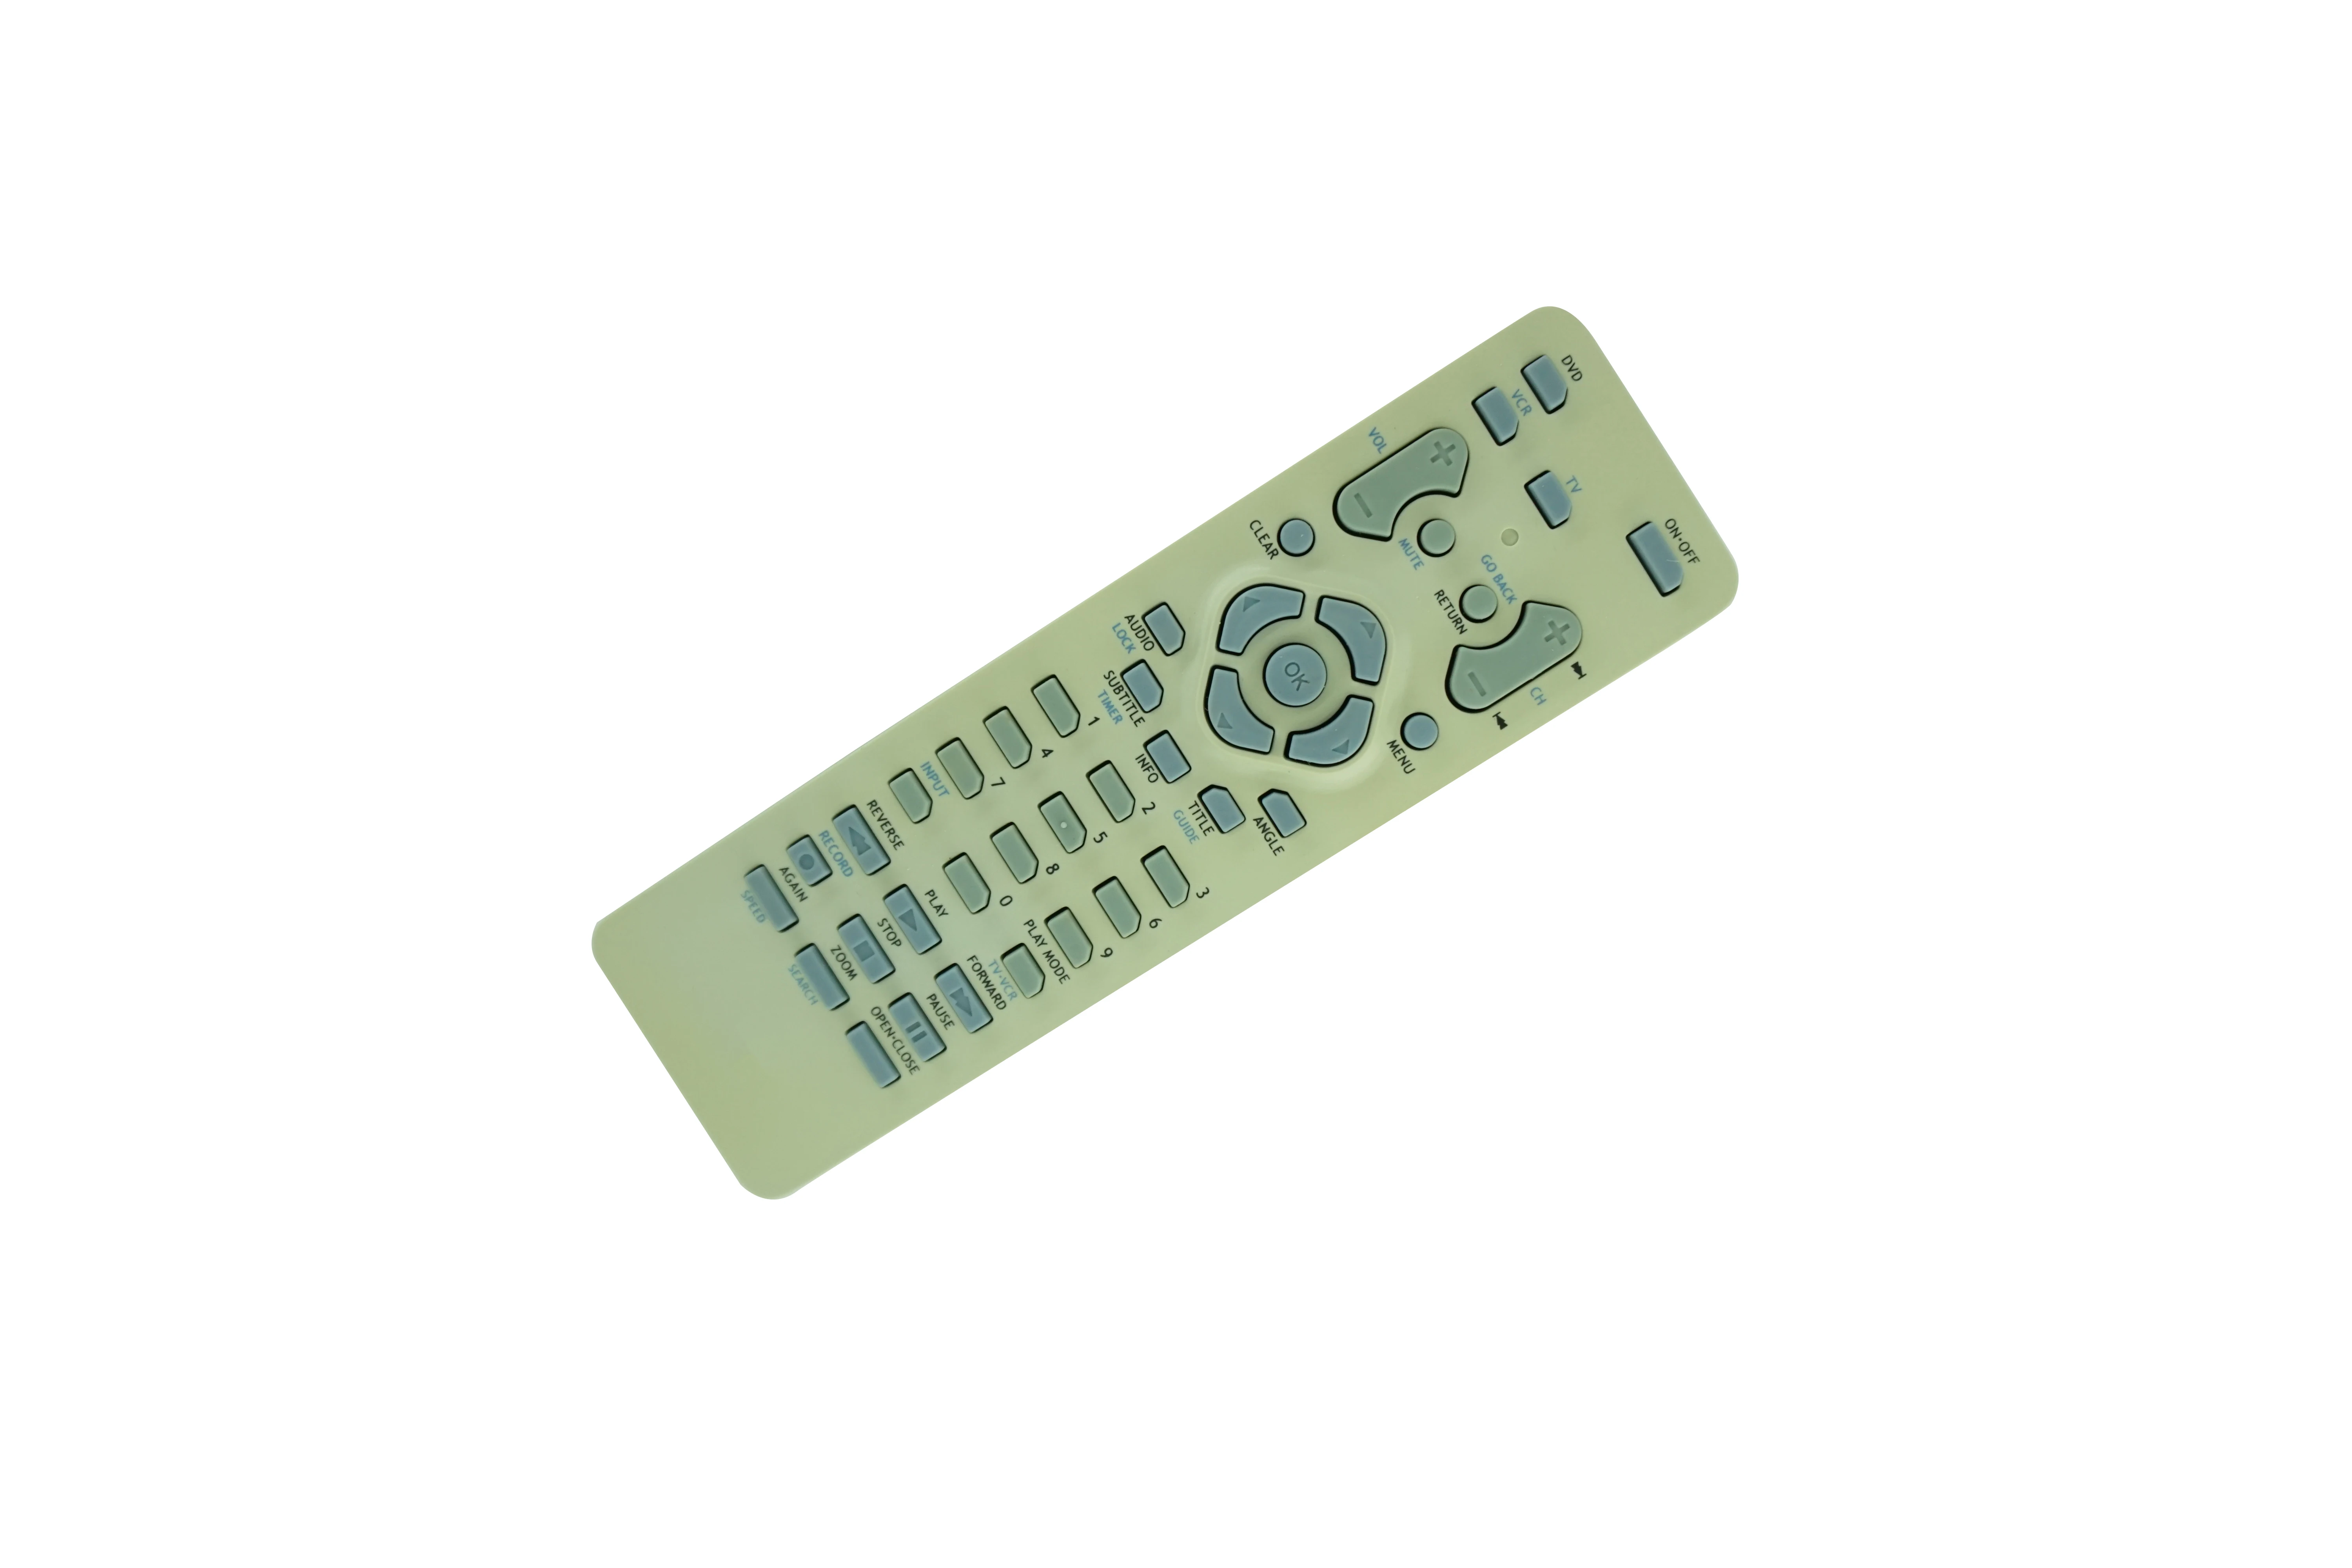 

Remote Control For RCA DRC198N DRC212N DRC6300N DRC6350N DRC230N DRC232N DRC233N DRC240N DRC310N Progressive Scan DVD Player